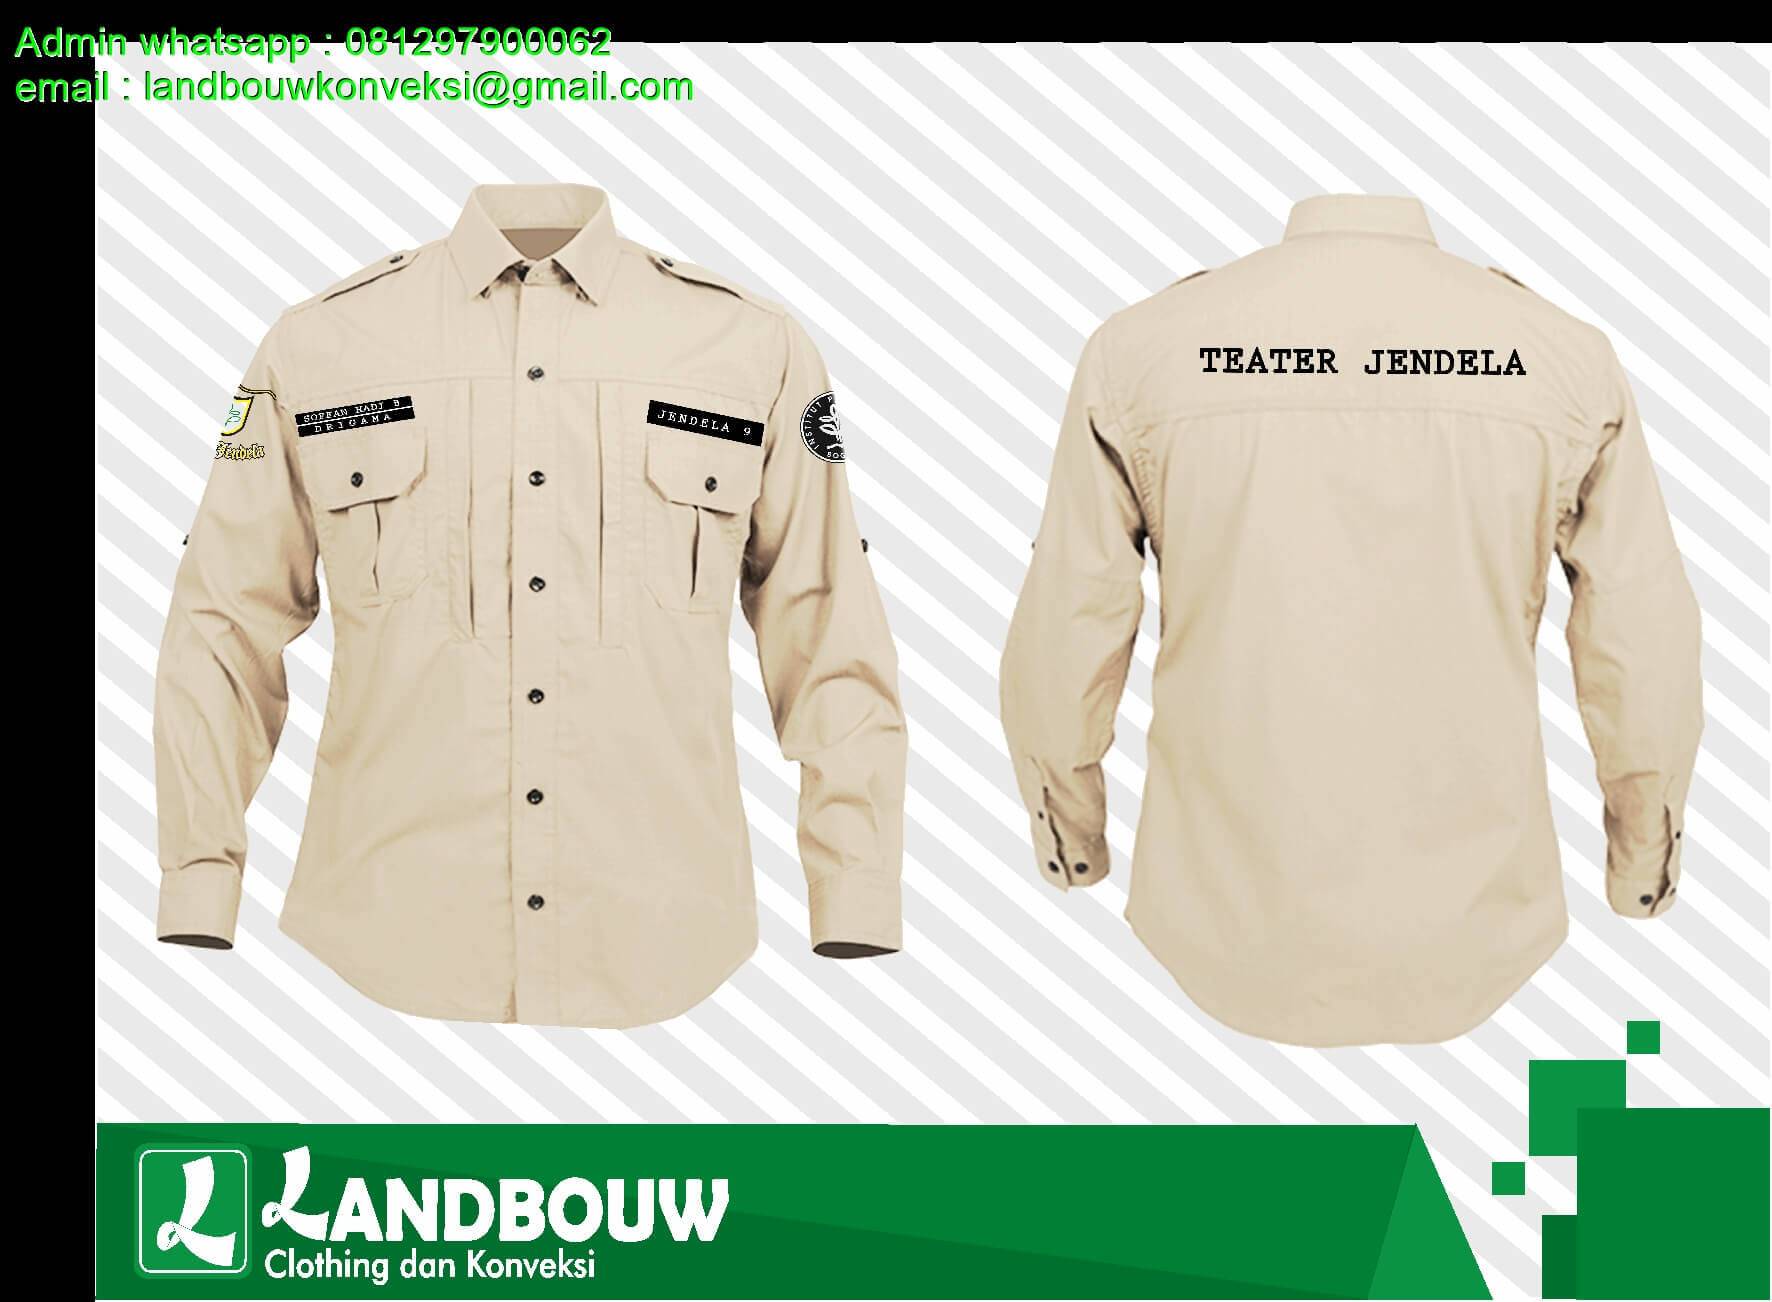 Berencana Membuat di Vendor Pembuatan Baju Lapang Kualitas Premium? Jasa CMT Landbouw di  Nagreg Bandung Saja